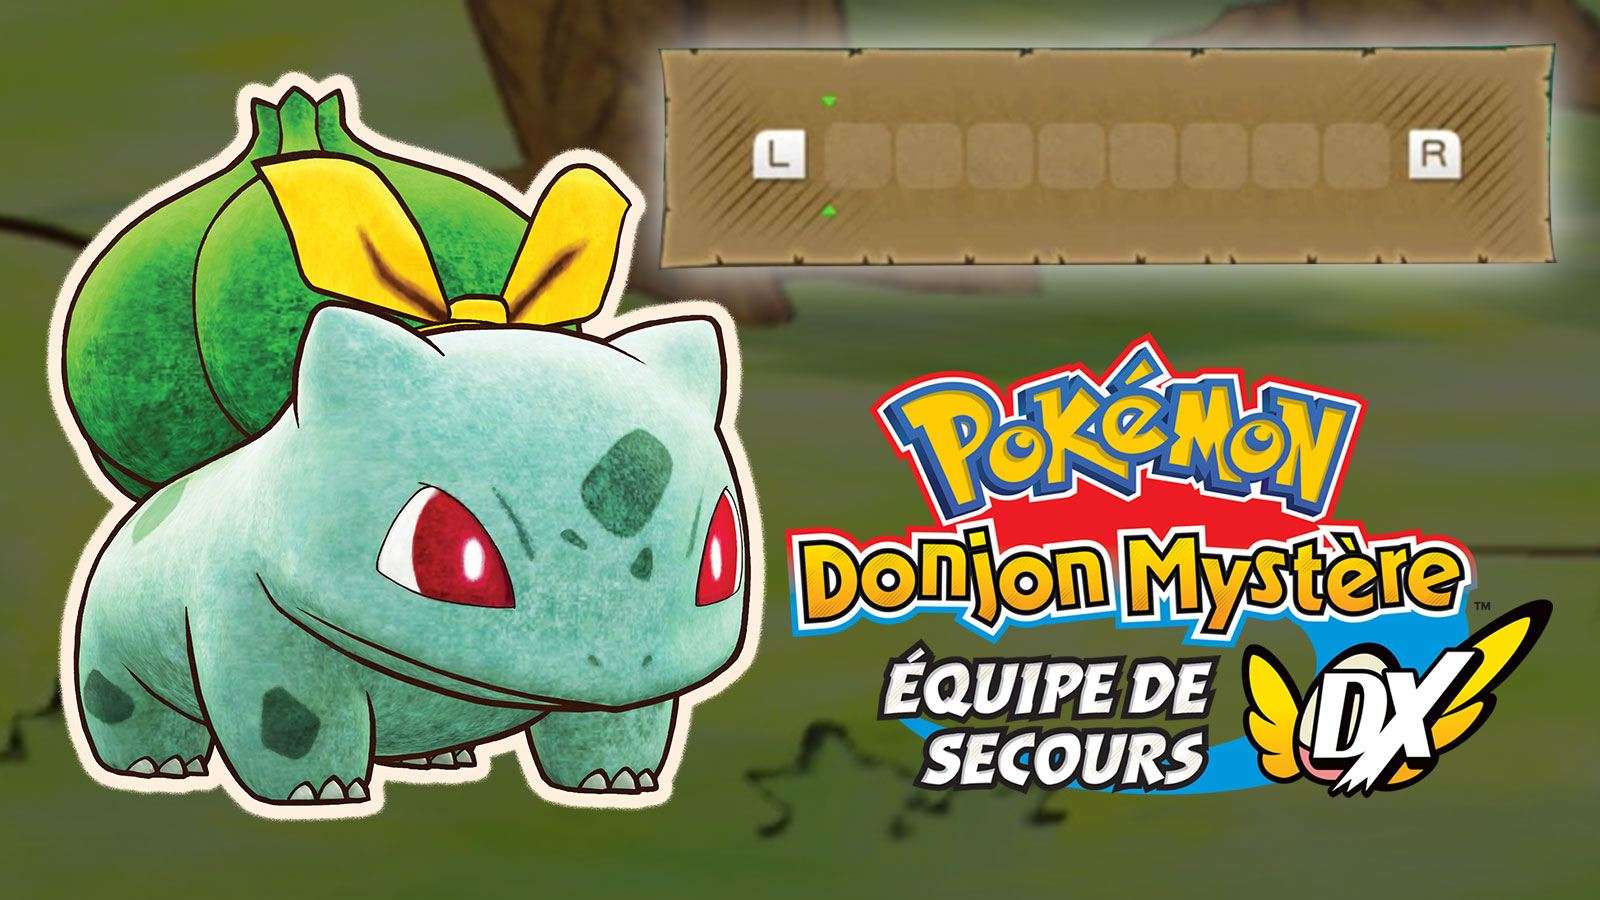 Courrier mystère dans Pokémon Donjon Mystère : Équipe de Secours DX